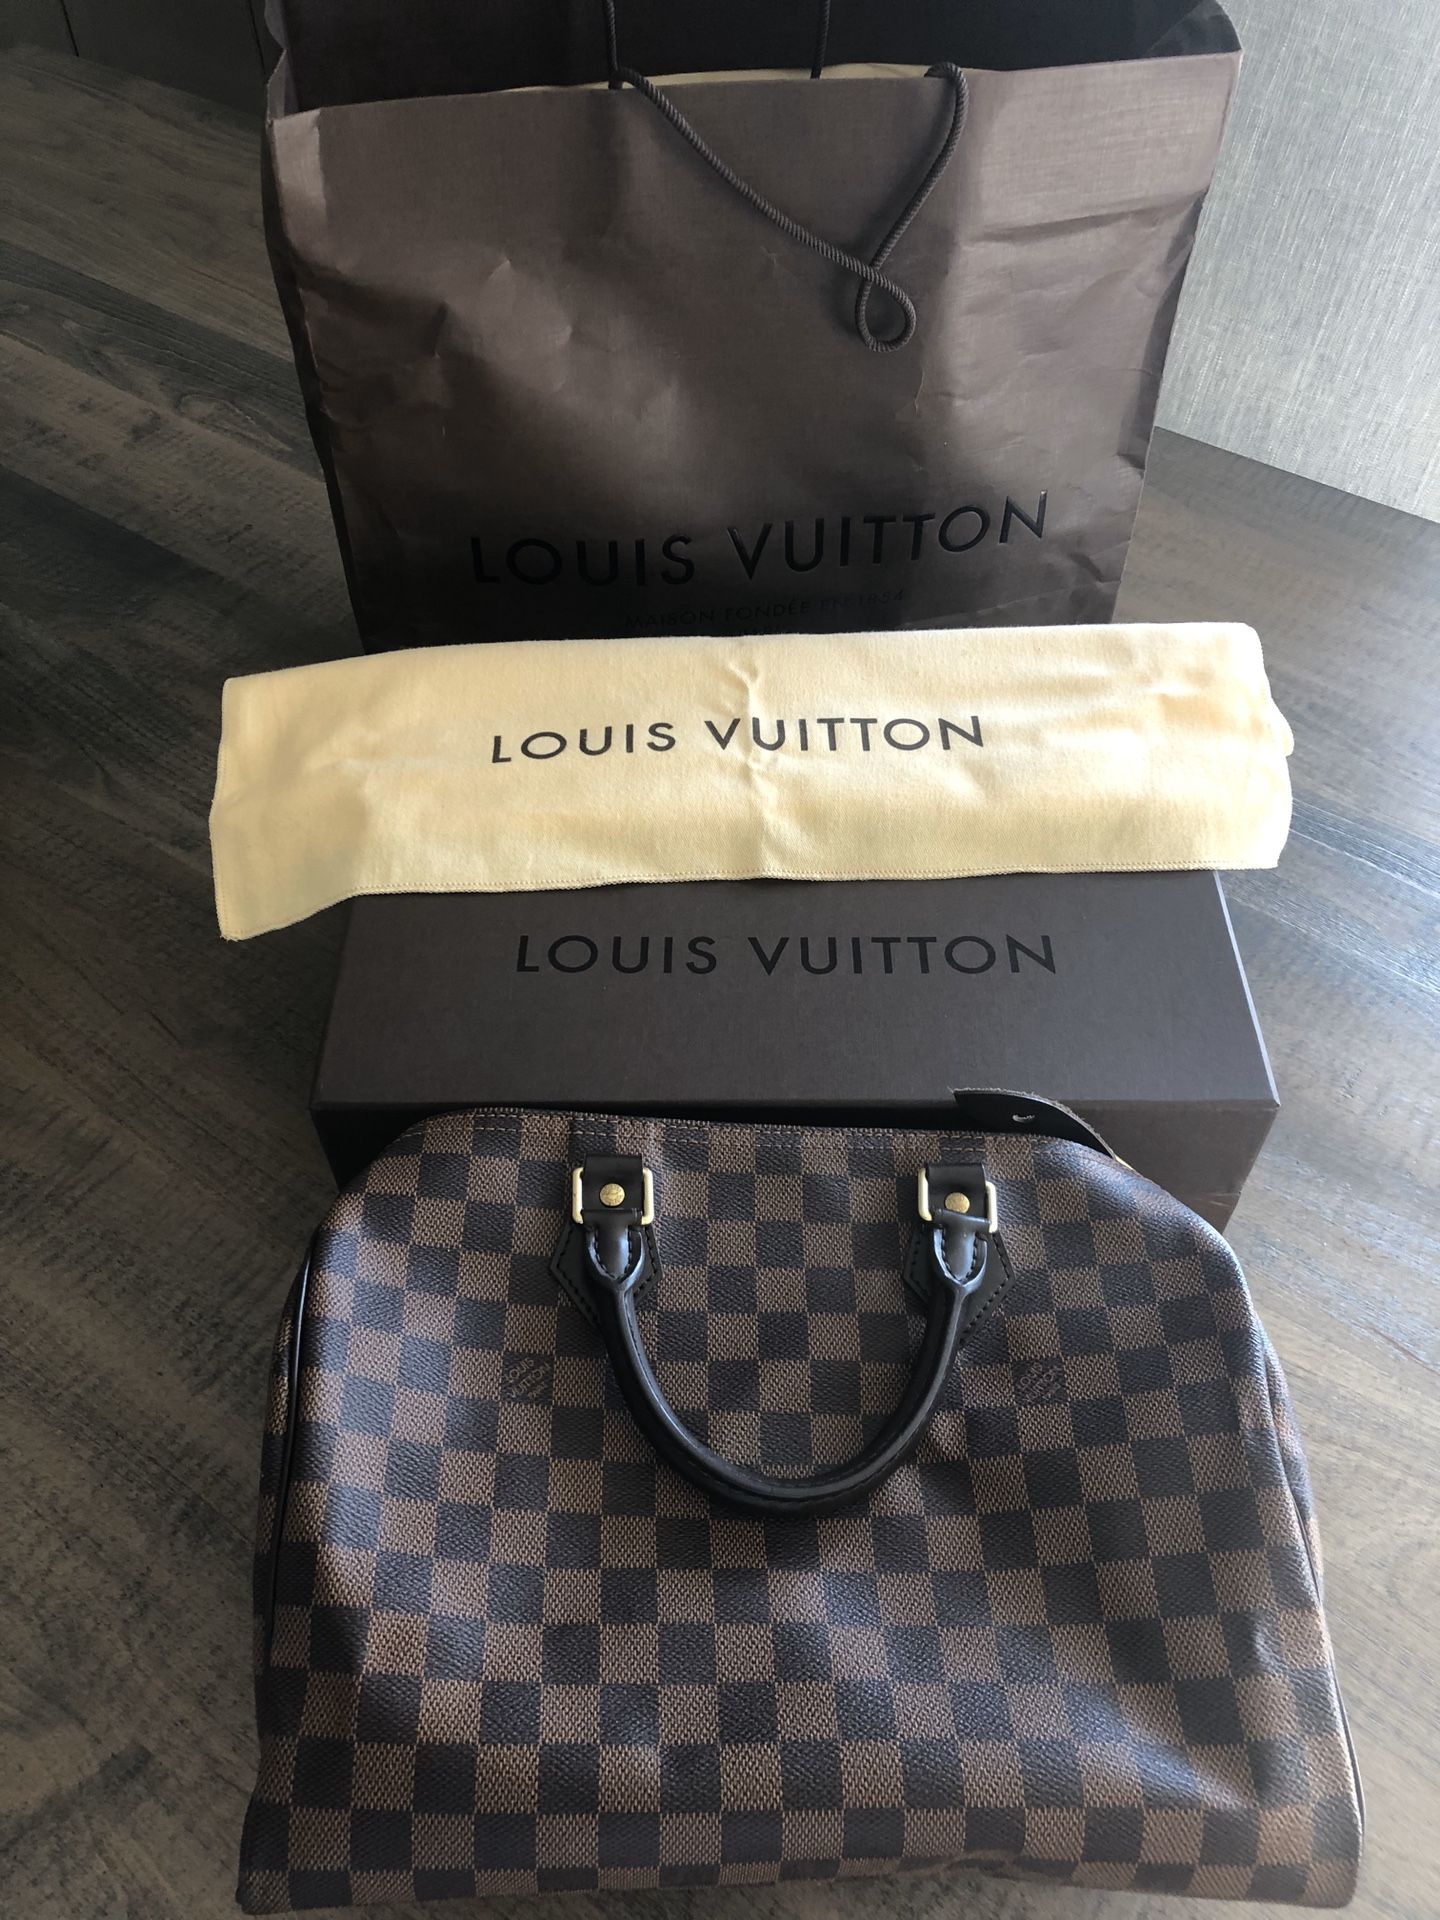 Louis Vuitton Speedy 30 purse